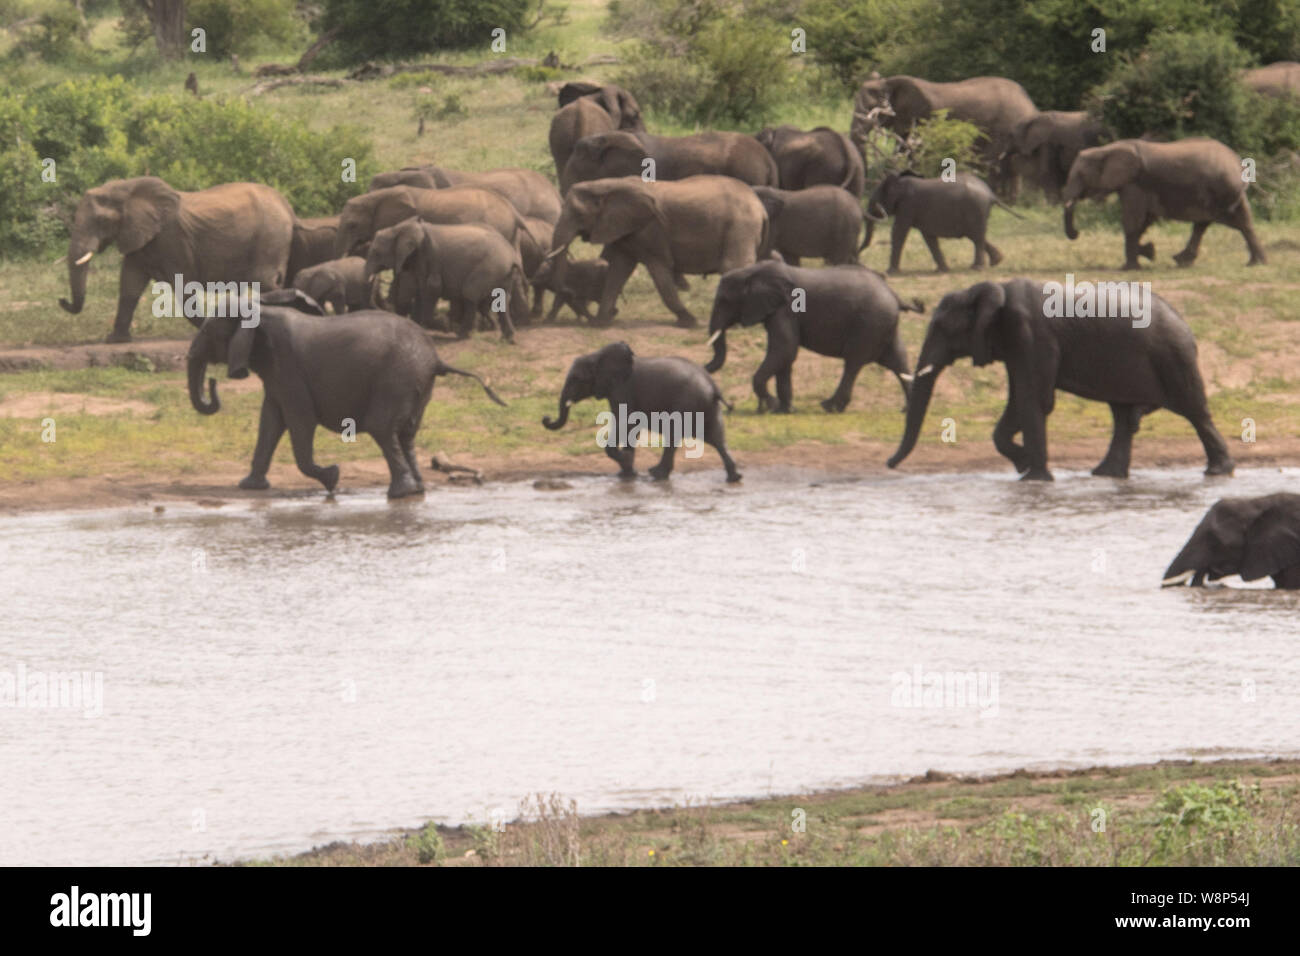 Un desfile de elefantes disfruta jugando cerca de un riego espera en el Parque Nacional Kruger Foto de stock